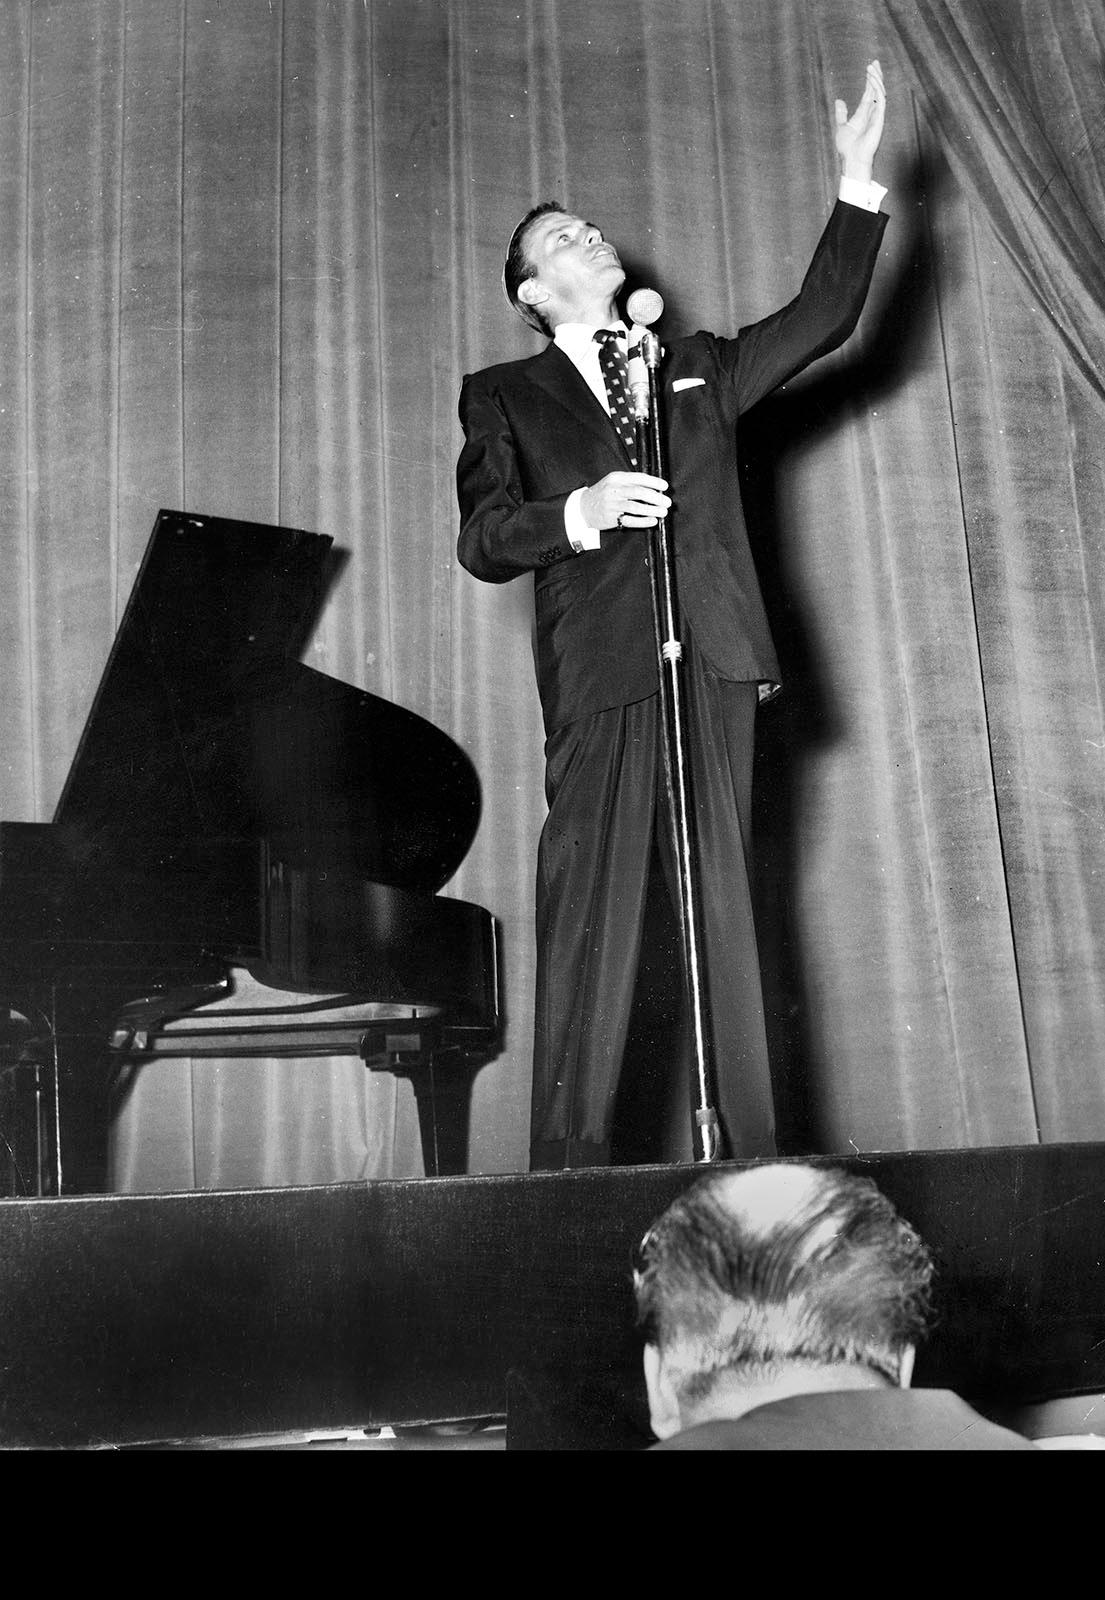 På China i Stockholm Frank Sinatras konsert på Chinasalong den 31 maj 1953 recenserades av Aftonbladets Teddy Nyblom. Han konstaterar att priset för biljetterna 15- 20 kronor var väl tilltaget och noterar de många luckorna på parkett.